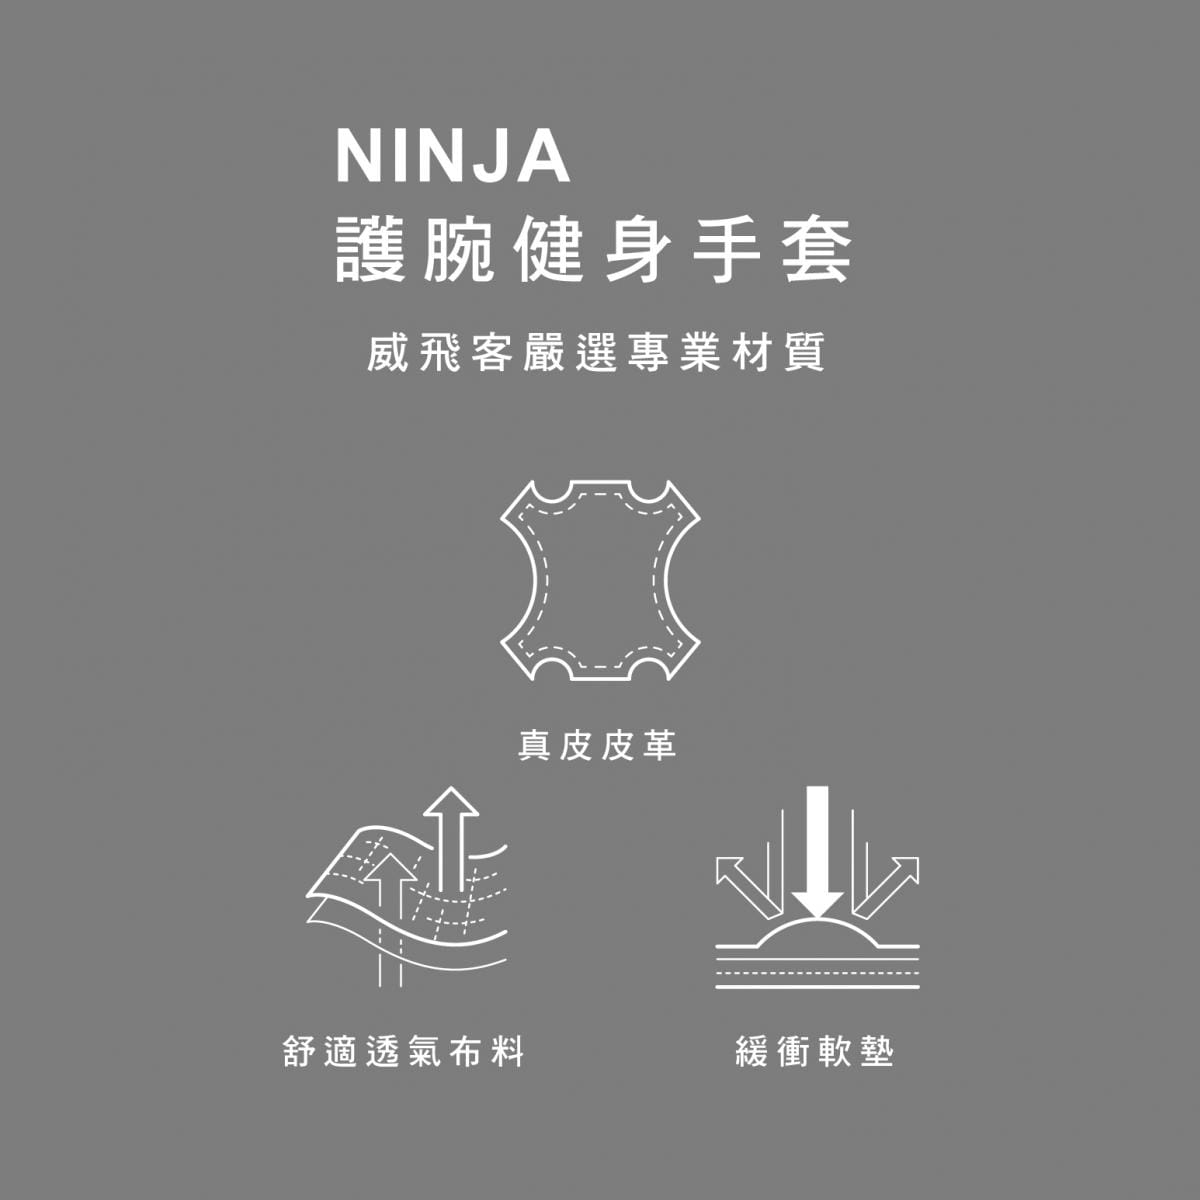 【威飛客手袋達人】護腕健身手套 - NINJA 4